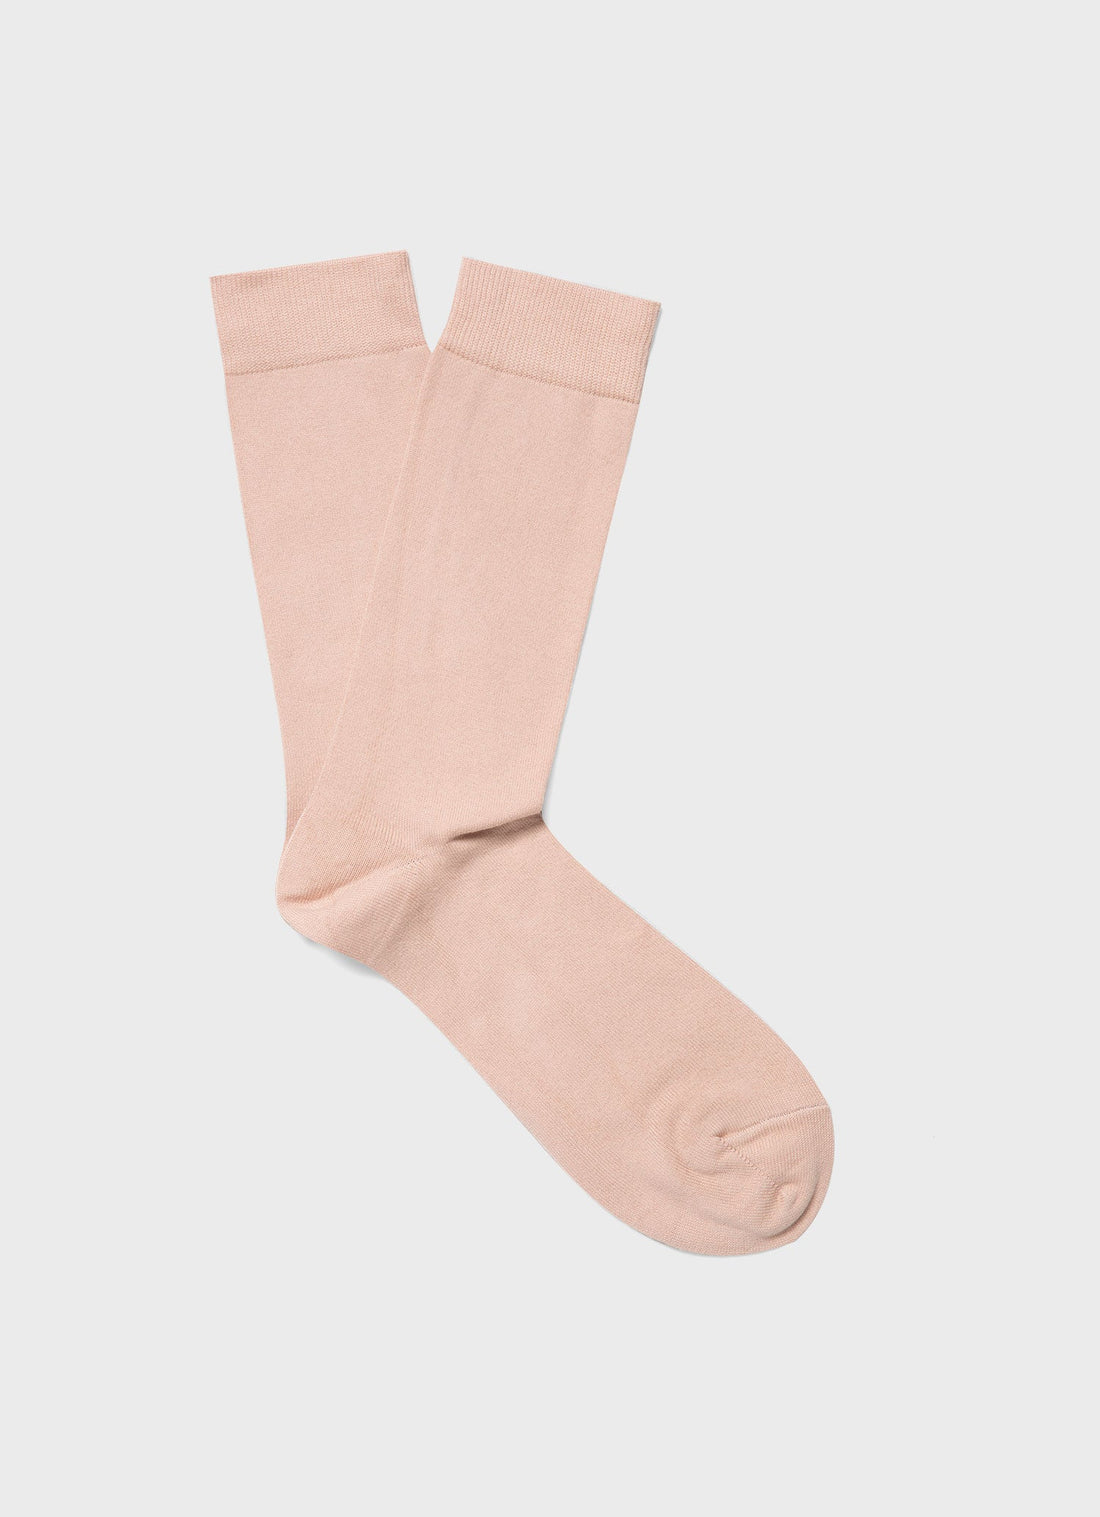 Men's Cotton Socks in Pale Pink